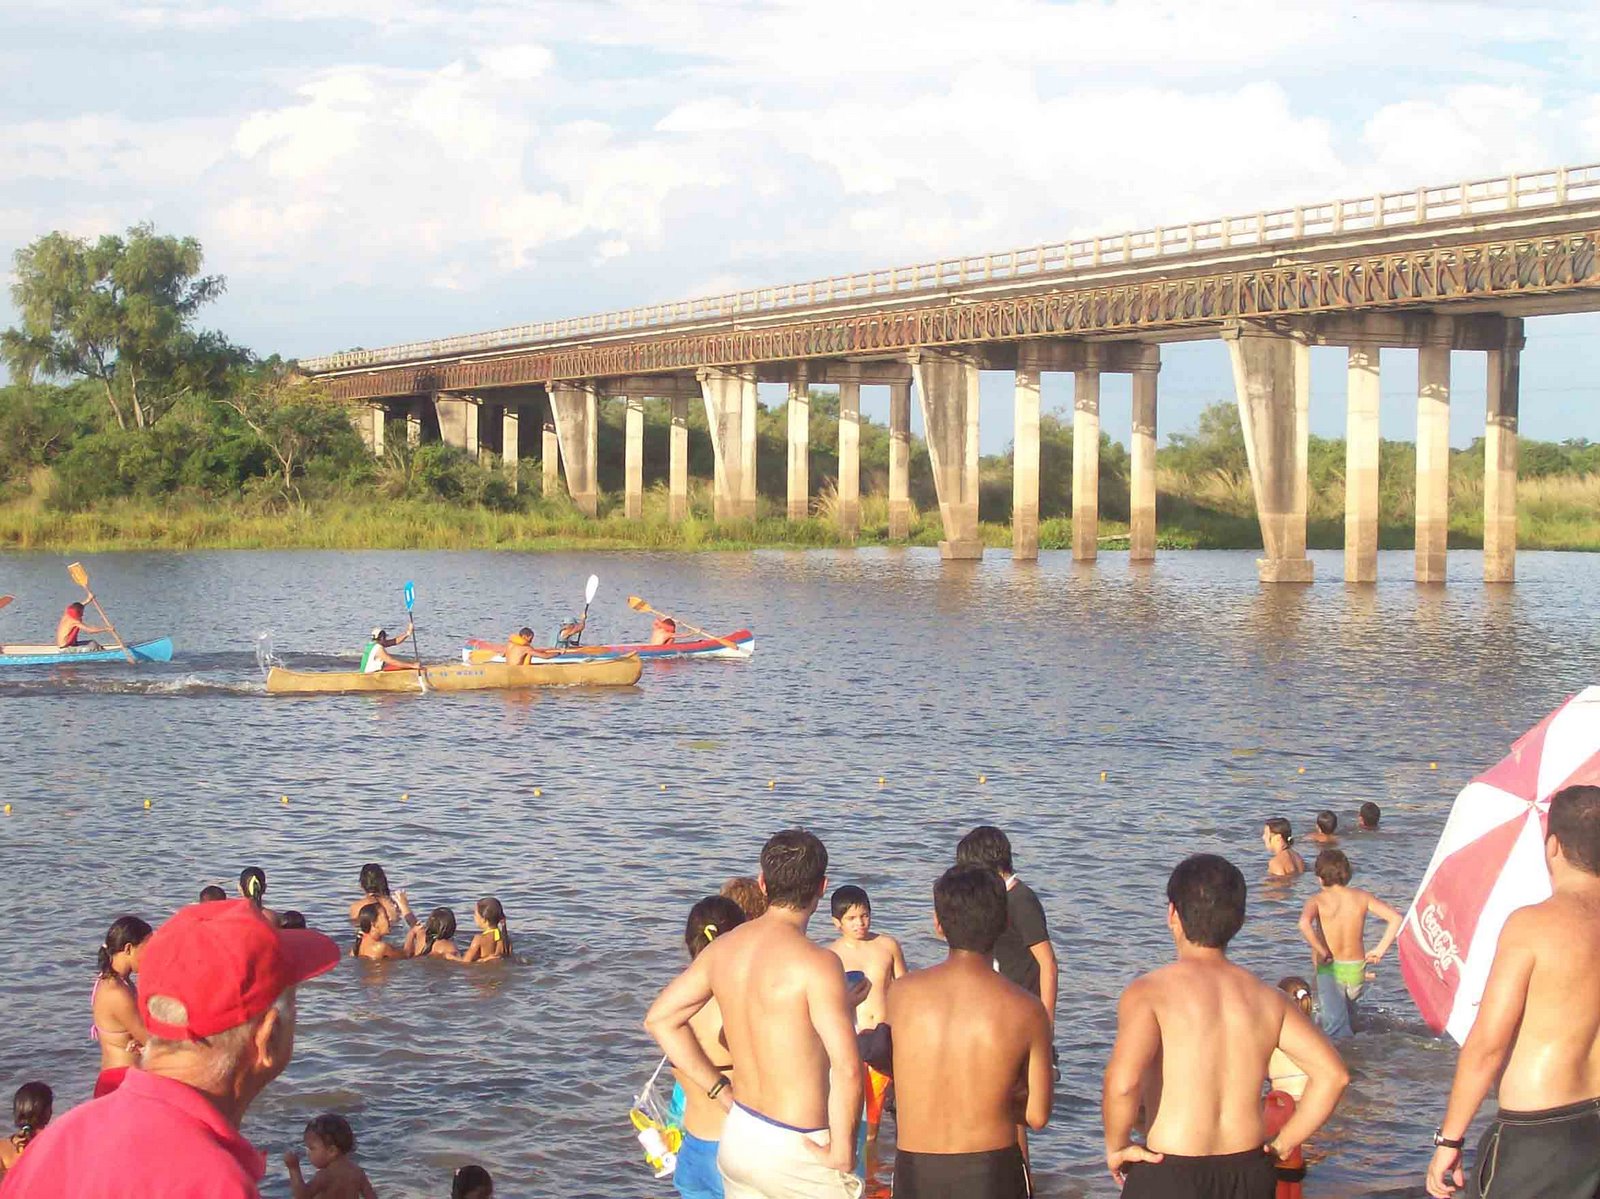 [Canotaje+en+puente+rio+Santa+Lucia-+las+piraguas+en+plena+competencia.jpg]